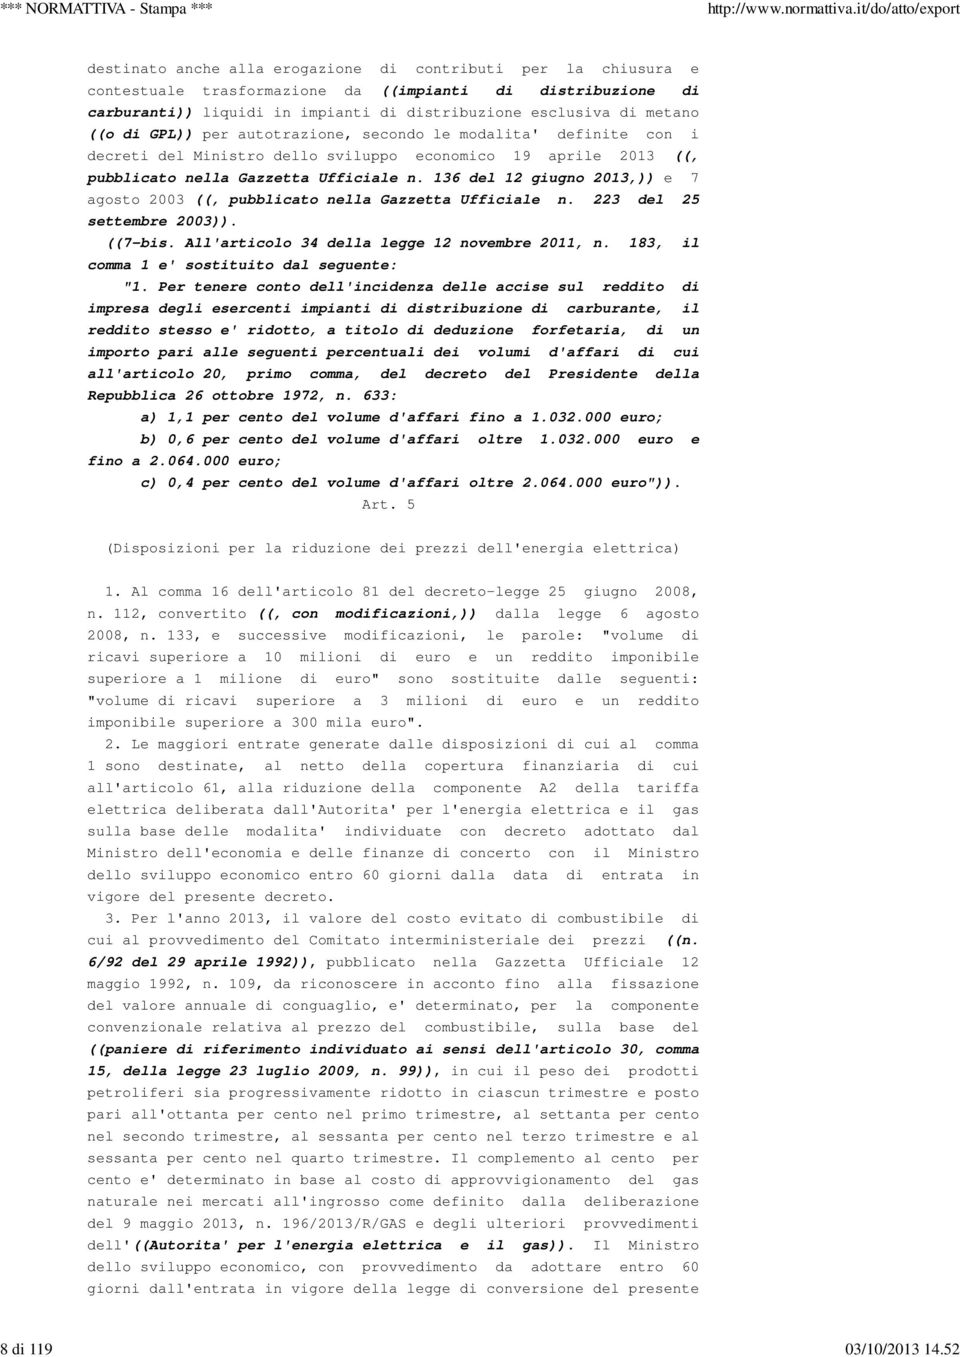 ((o di GPL)) per autotrazione, secondo le modalita' definite con i decreti del Ministro dello sviluppo economico 19 aprile 2013 ((, pubblicato nella Gazzetta Ufficiale n.